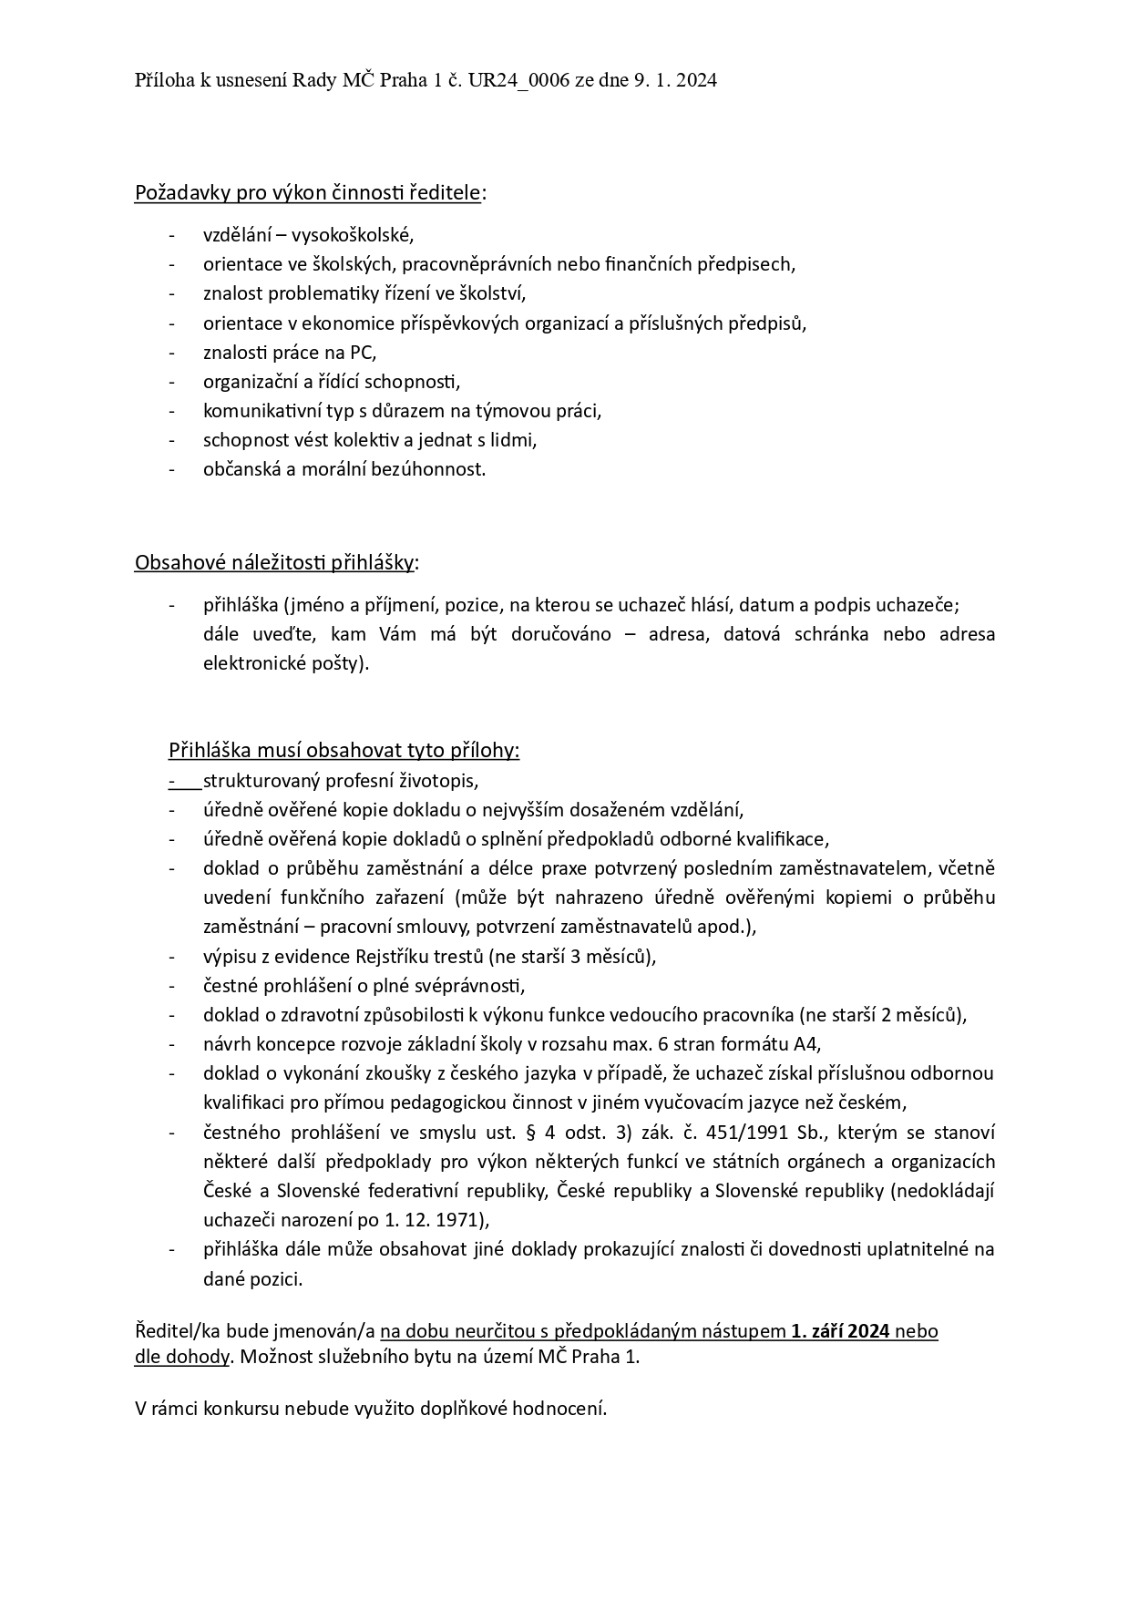 Konkursní řízení - ZŠ Brána jazyků.doc - Dokumenty Google_page-0002.jpg